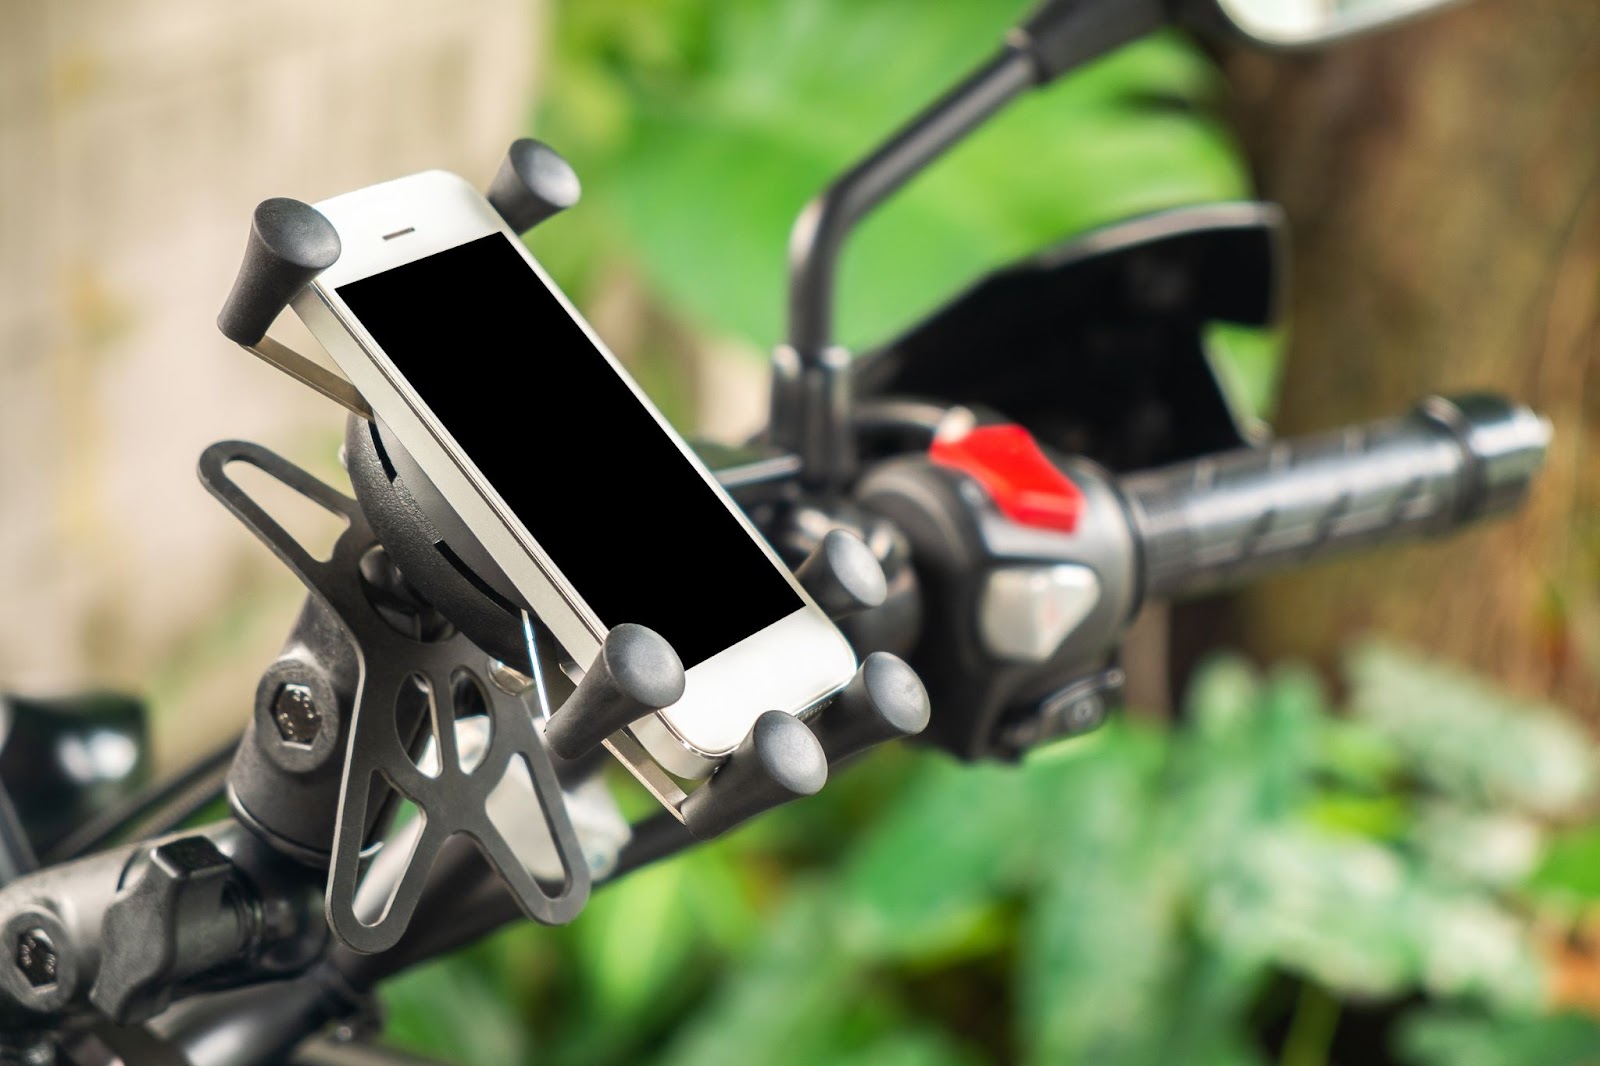 Soporte para móvil o GPS en el manillar de una moto